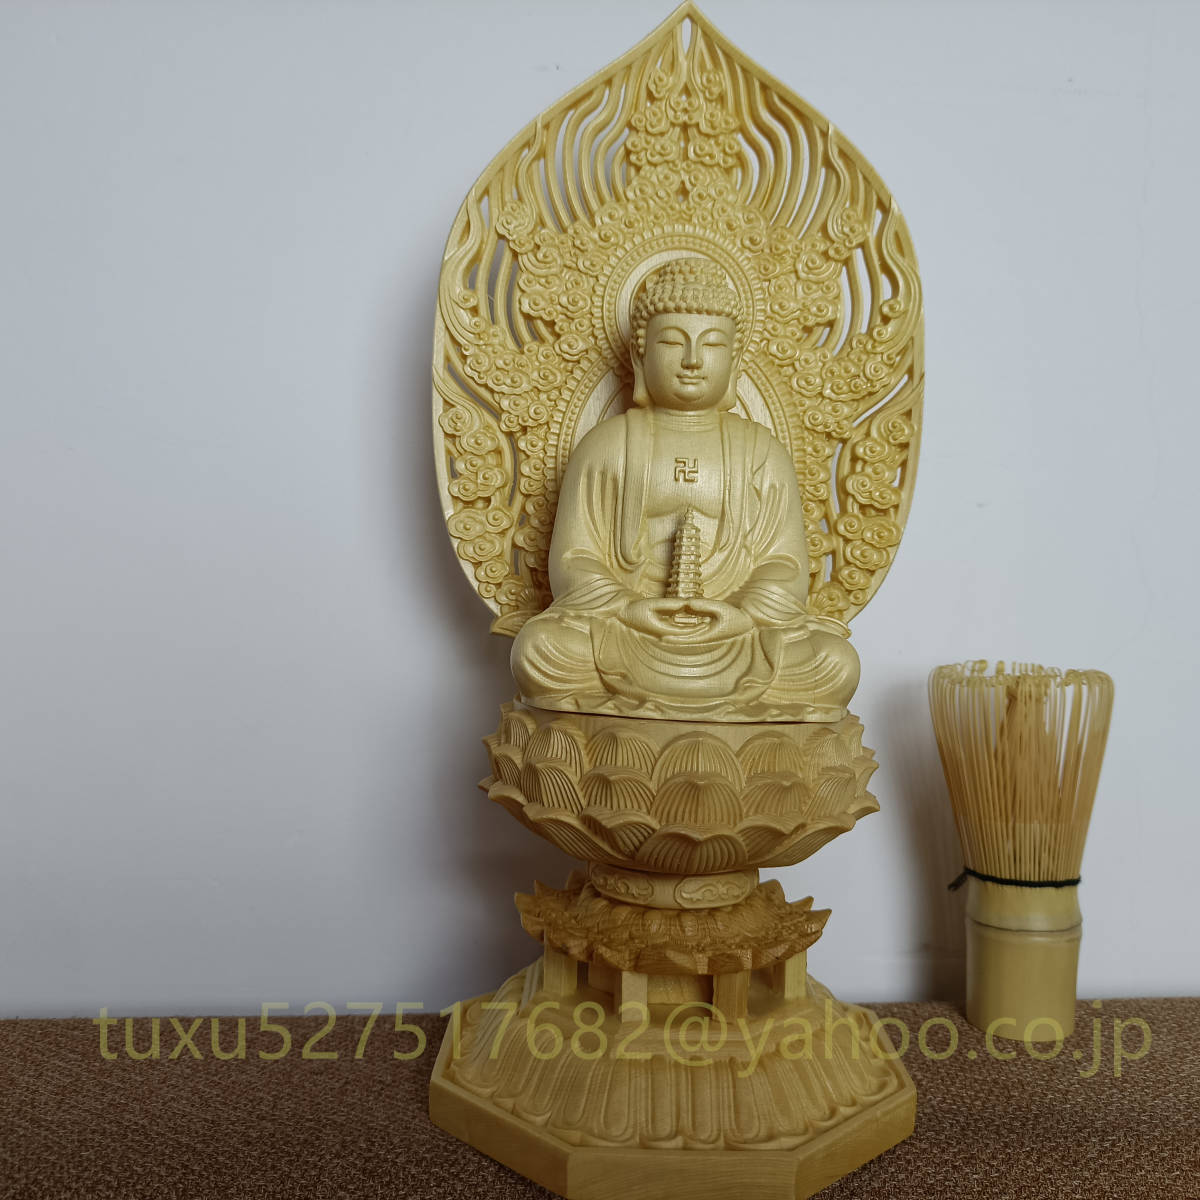 薬師如来特上彫木彫仏像仏教工芸品細密彫刻開運出世日本代购,买对网